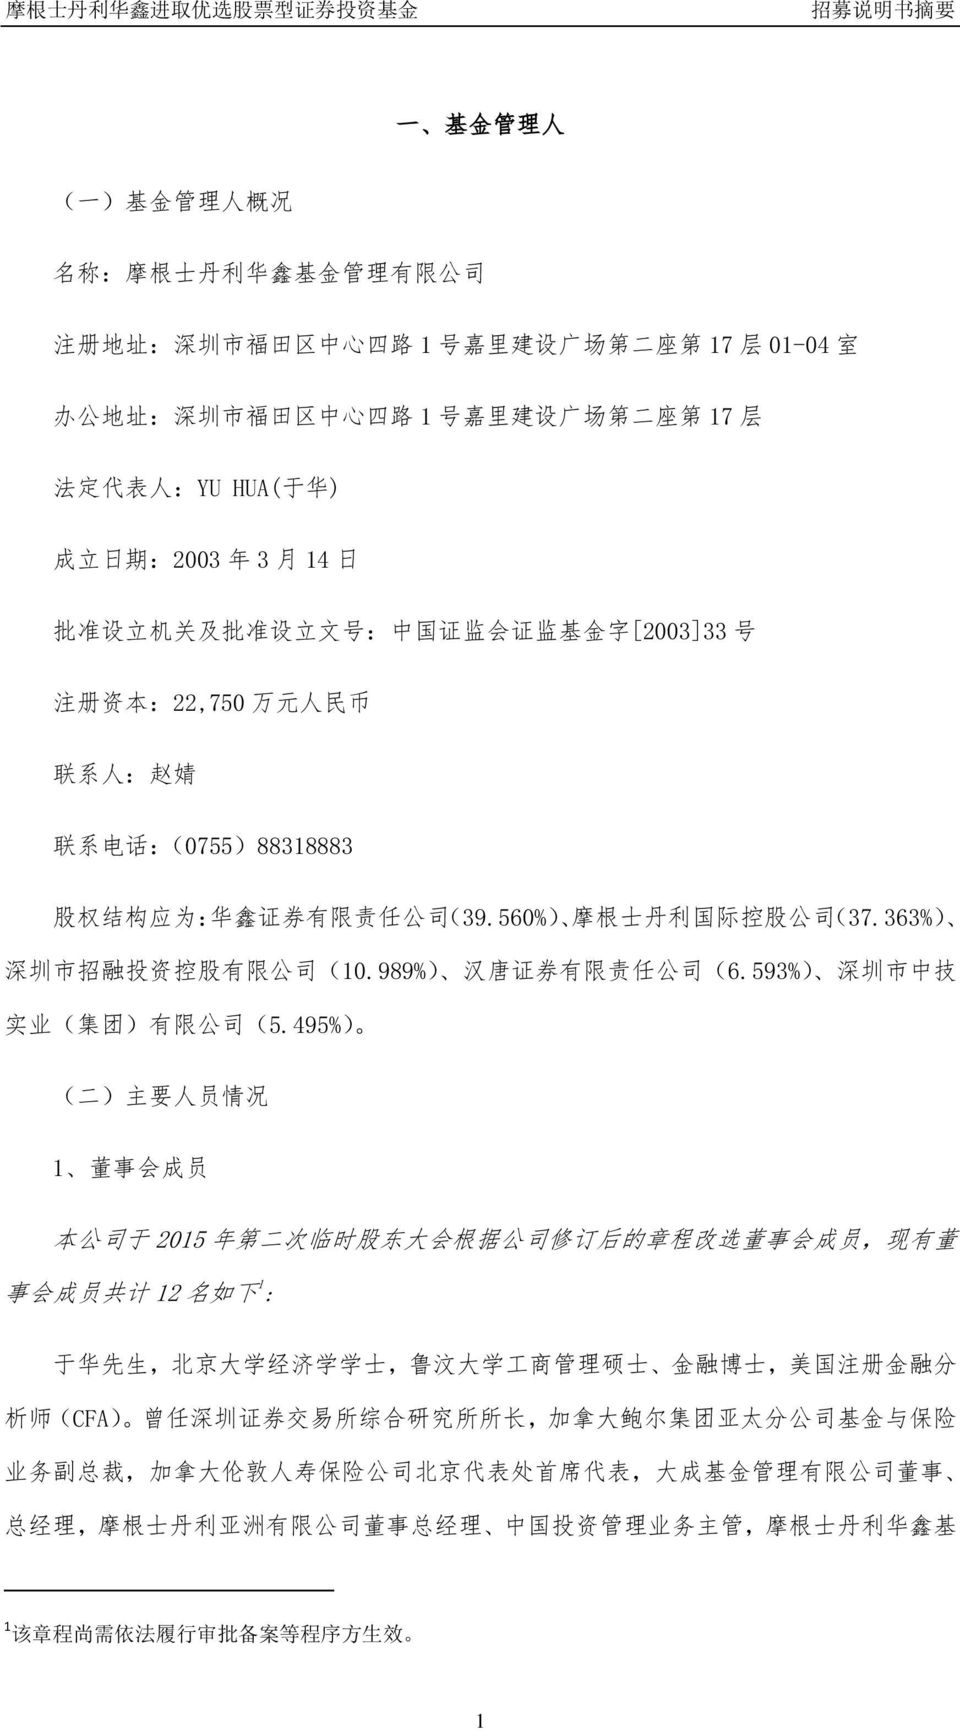 (39.560%) 摩 根 士 丹 利 国 际 控 股 公 司 (37.363%) 深 圳 市 招 融 投 资 控 股 有 限 公 司 (10.989%) 汉 唐 证 券 有 限 责 任 公 司 (6.593%) 深 圳 市 中 技 实 业 ( 集 团 ) 有 限 公 司 (5.